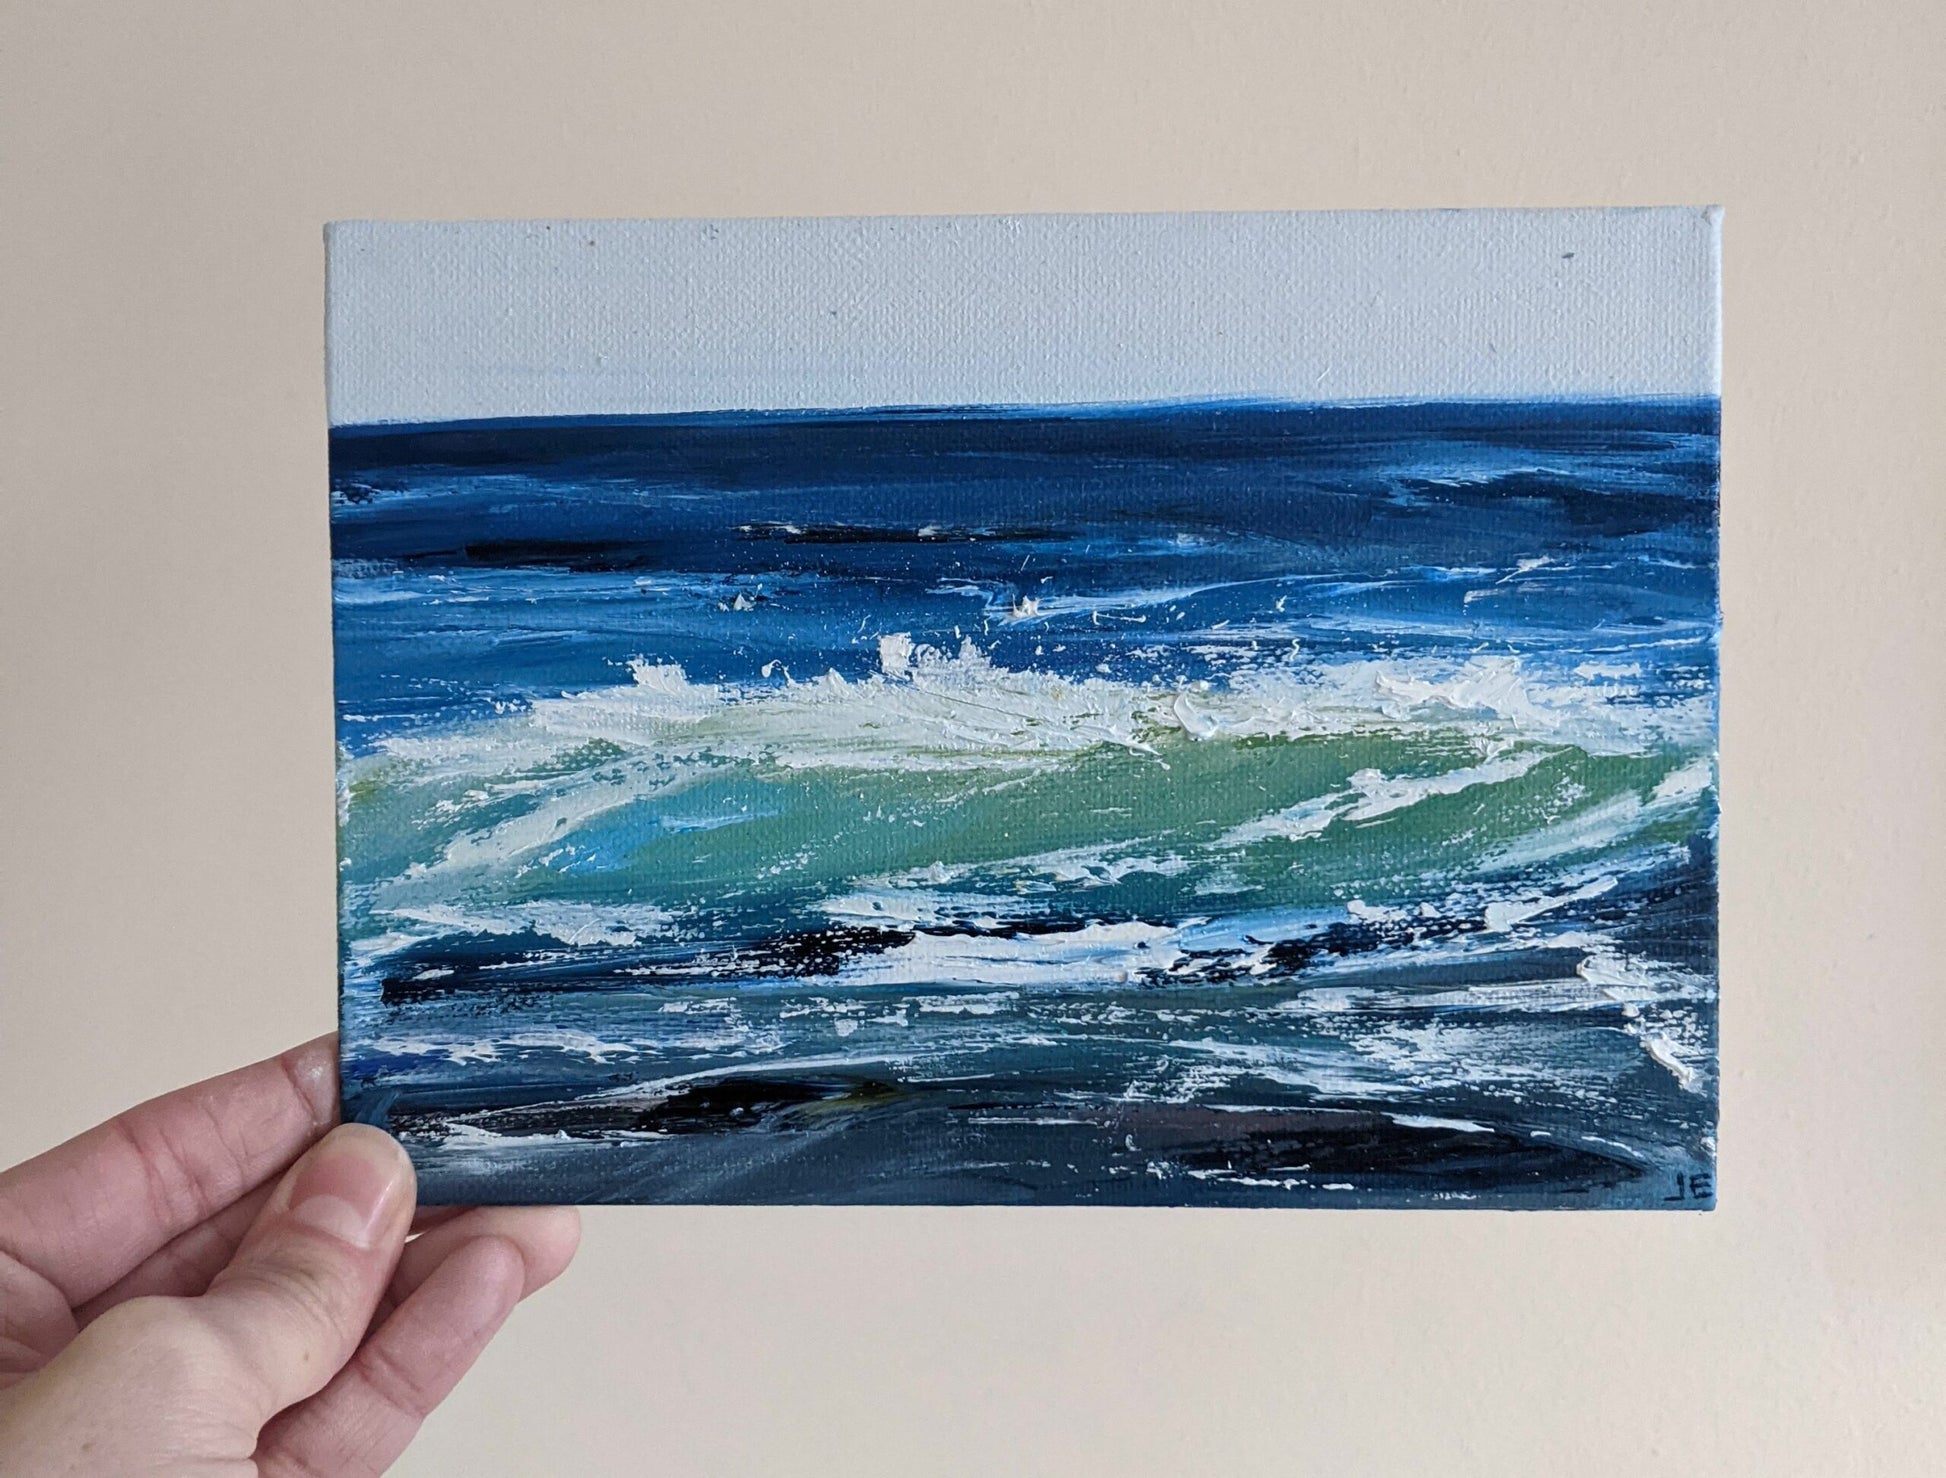 Miniature Wave Seascape #4 oil painting on canvas board in studio, by Jo Earl